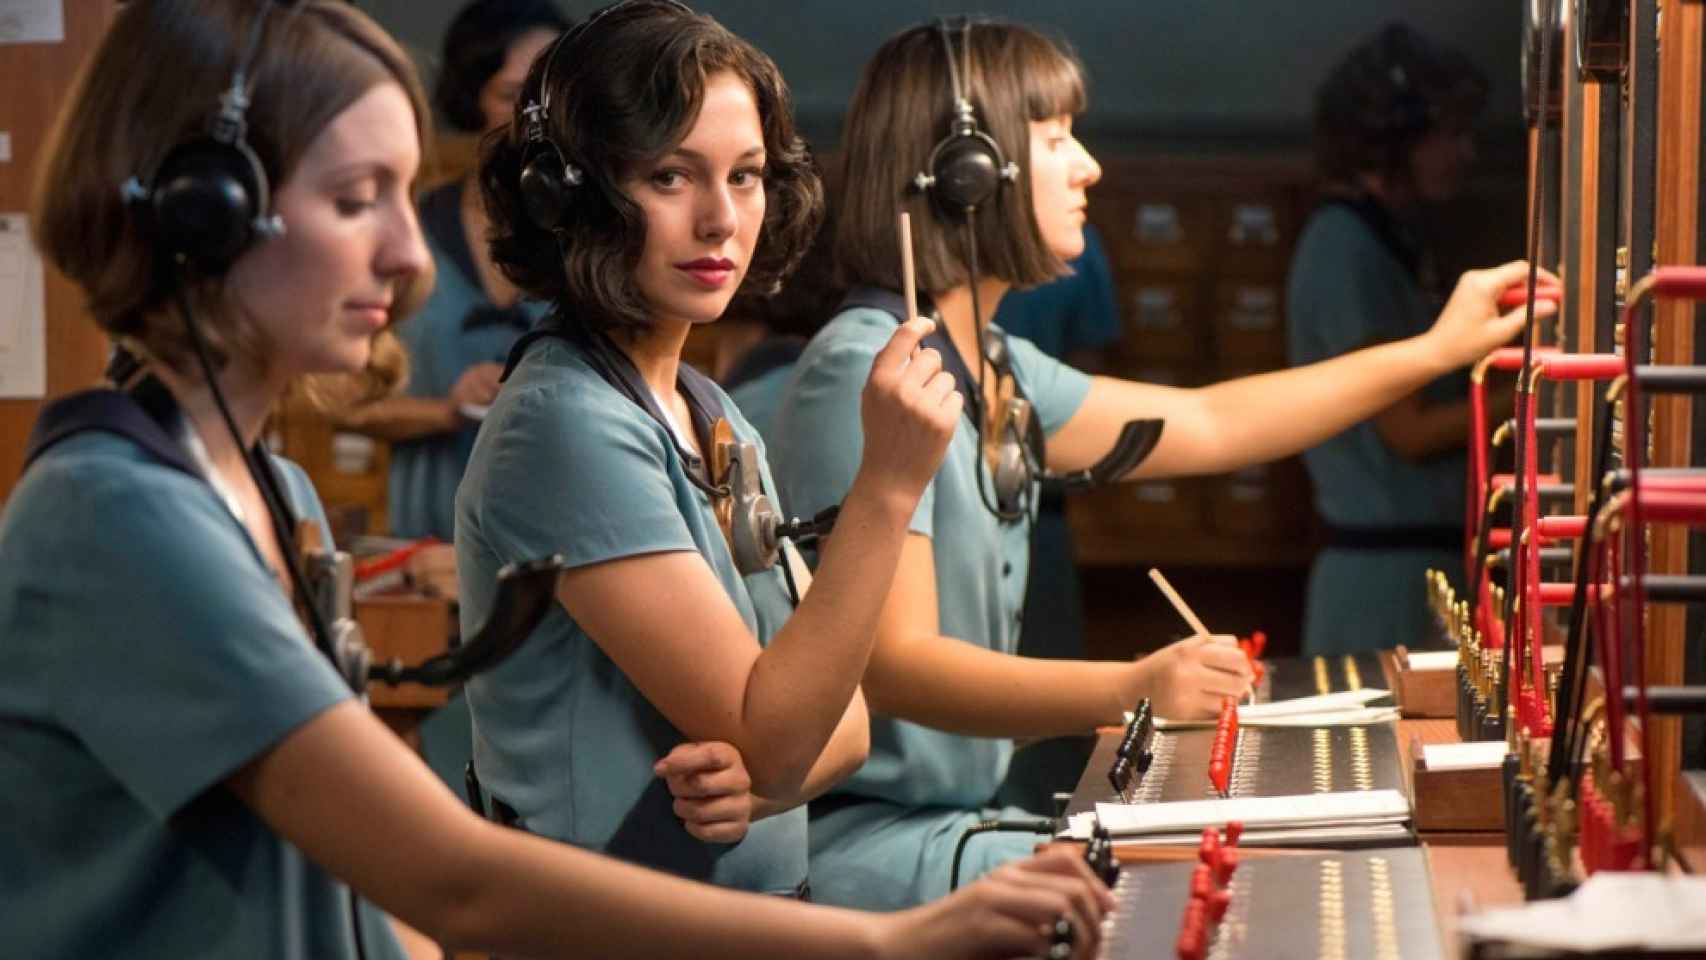 Pasado y futuro: las 'Chicas del cable', serie inspirada en las primeras trabajadoras de Telefónica y que emite Movistar+, fruto de su acuerdo de integración de contenidos con Netflix.